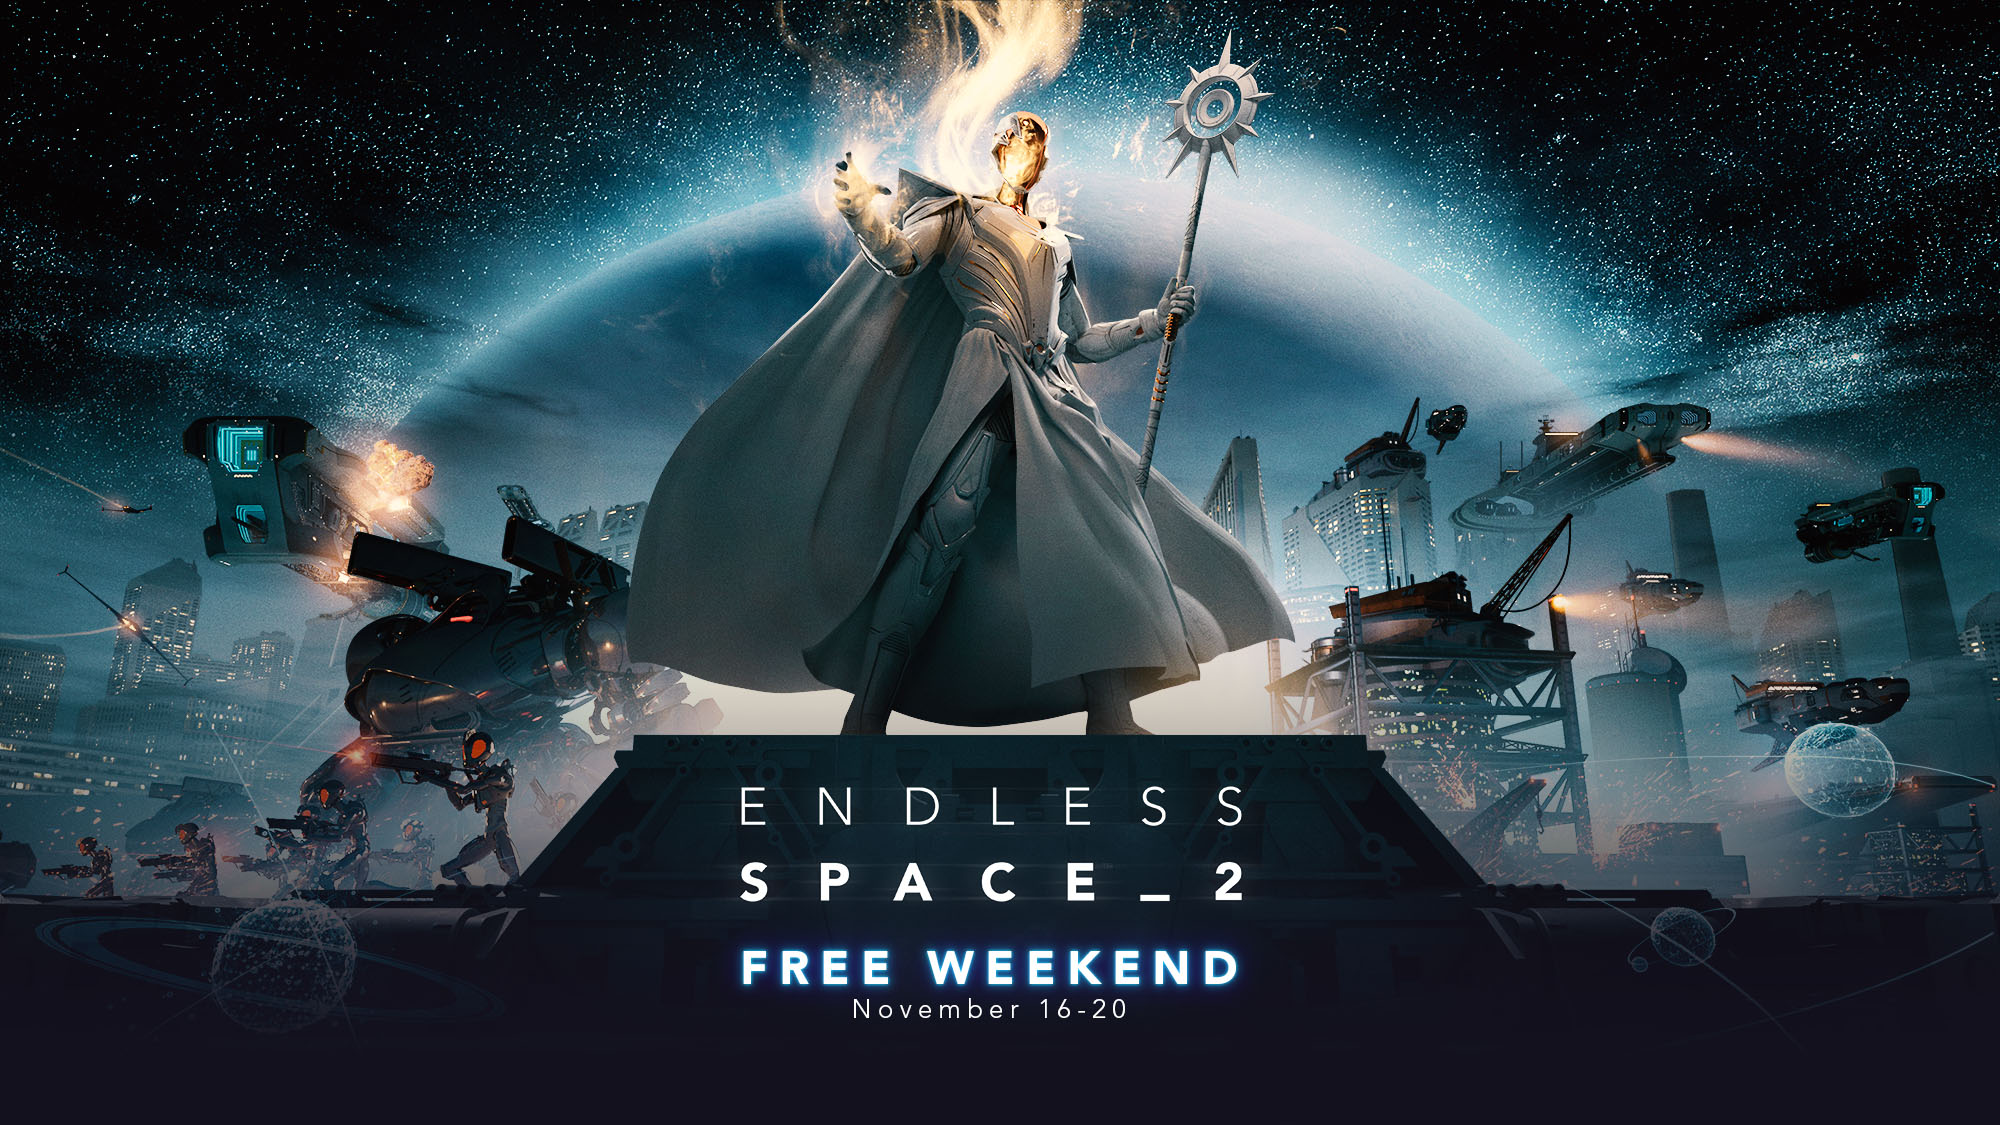 Endless Space 2 Free Weekend